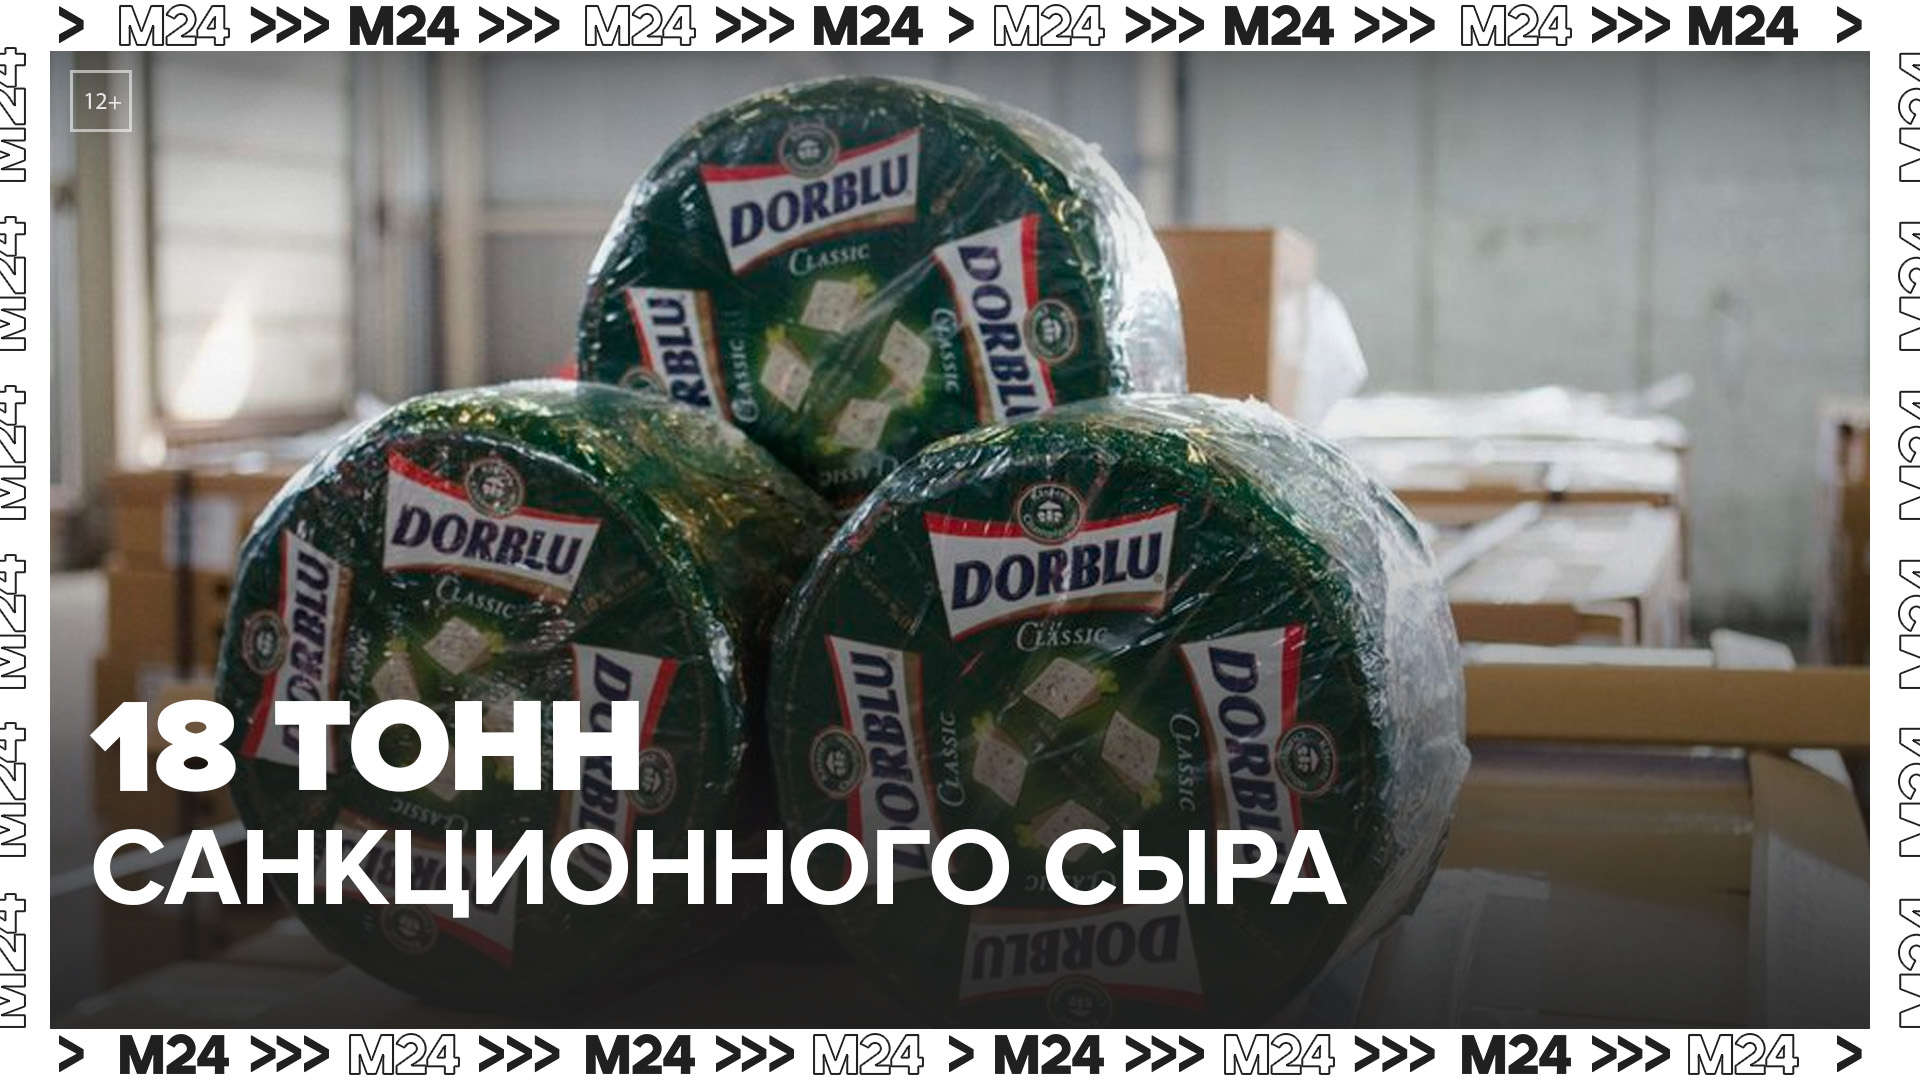 Московские таможенники задержали 18 тонн санкционного сыра из Литвы - Москва 24